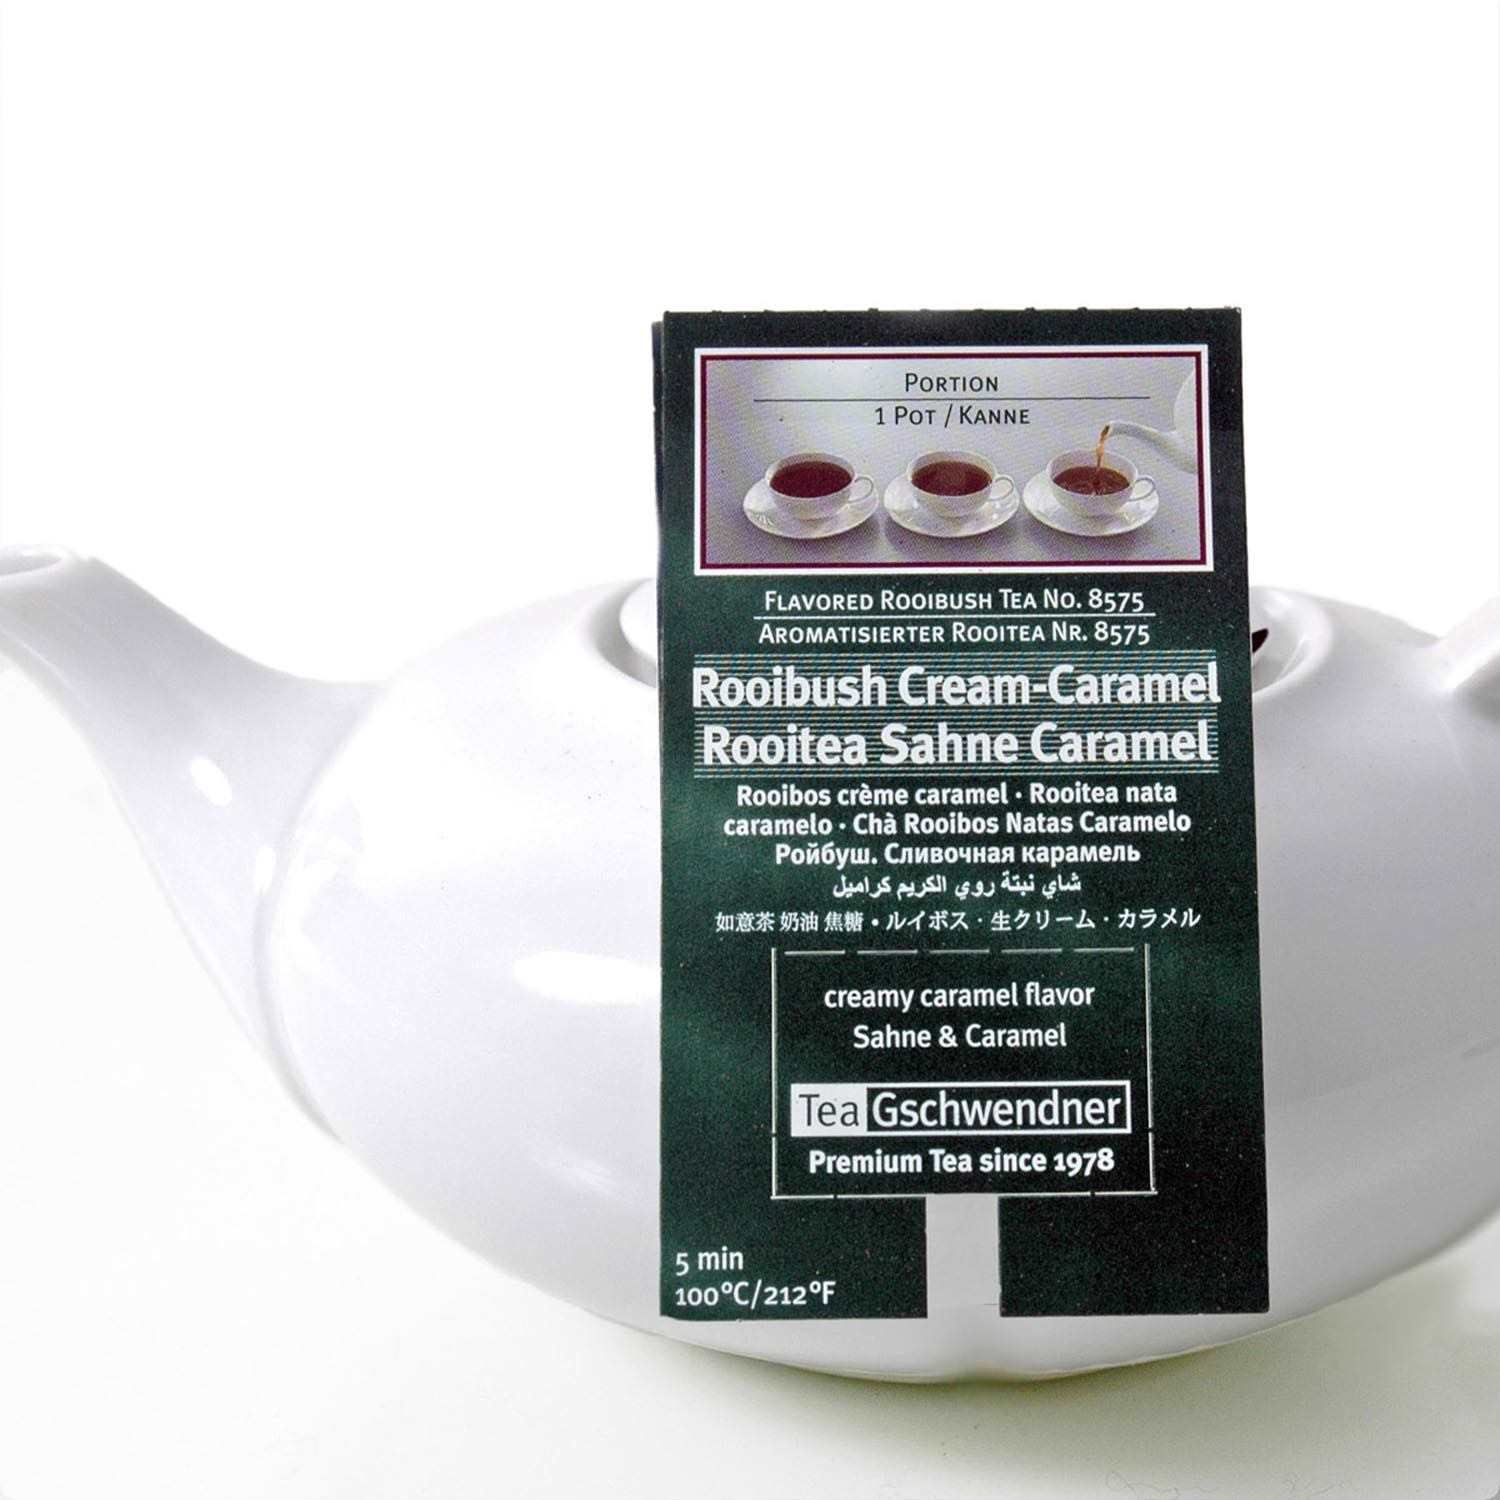 Rooibush Cream Caramel